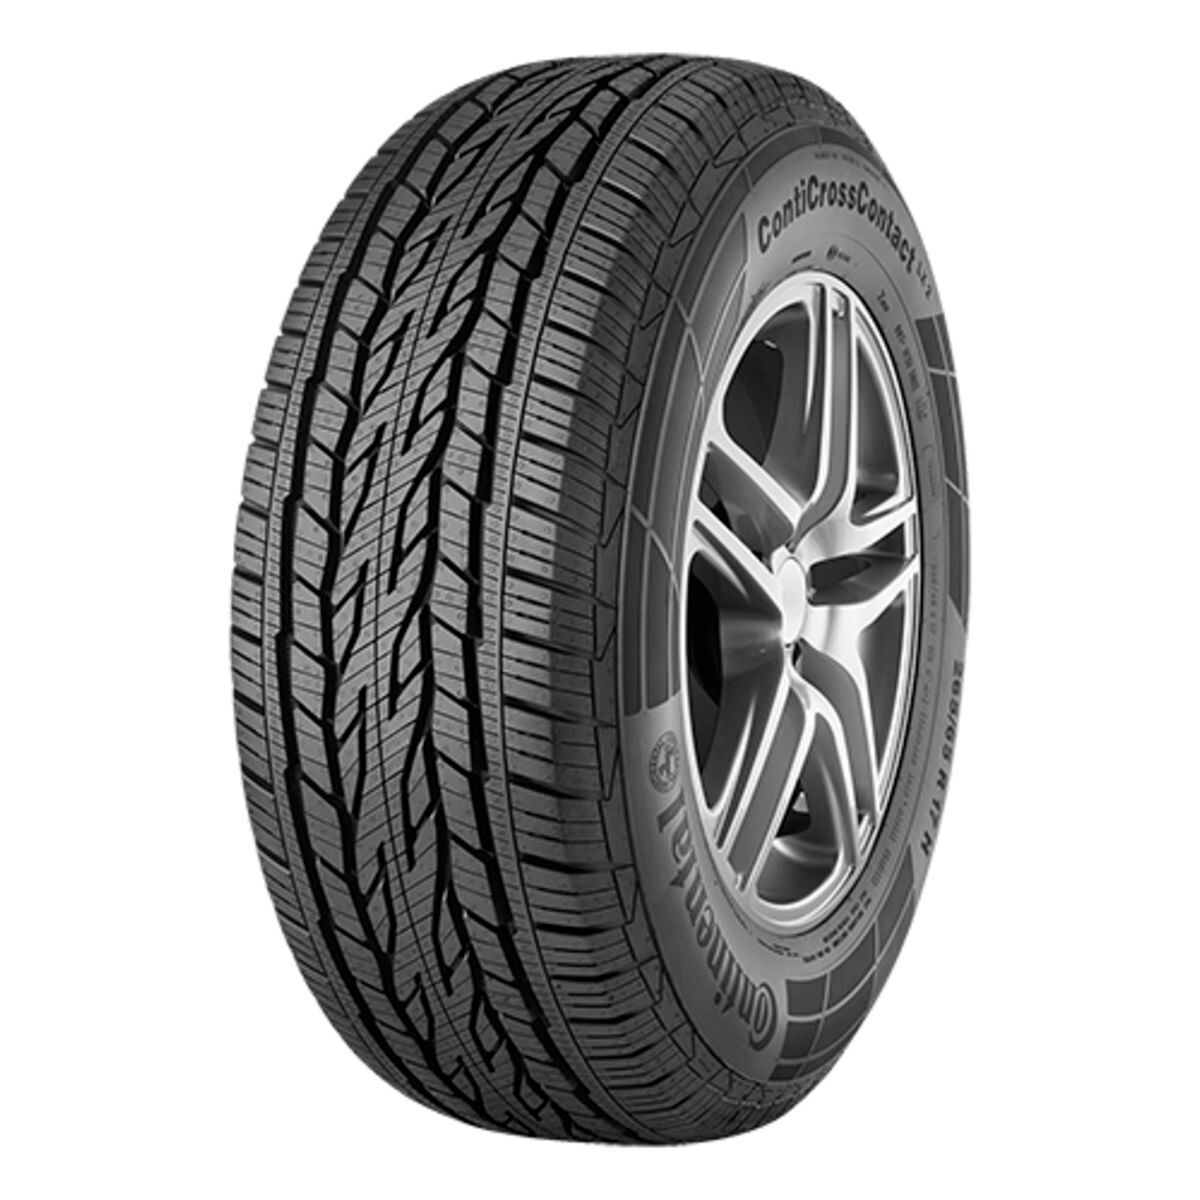 Neumáticos de verano CONTINENTAL ContiCrossContact LX 2 215/65R16 98H